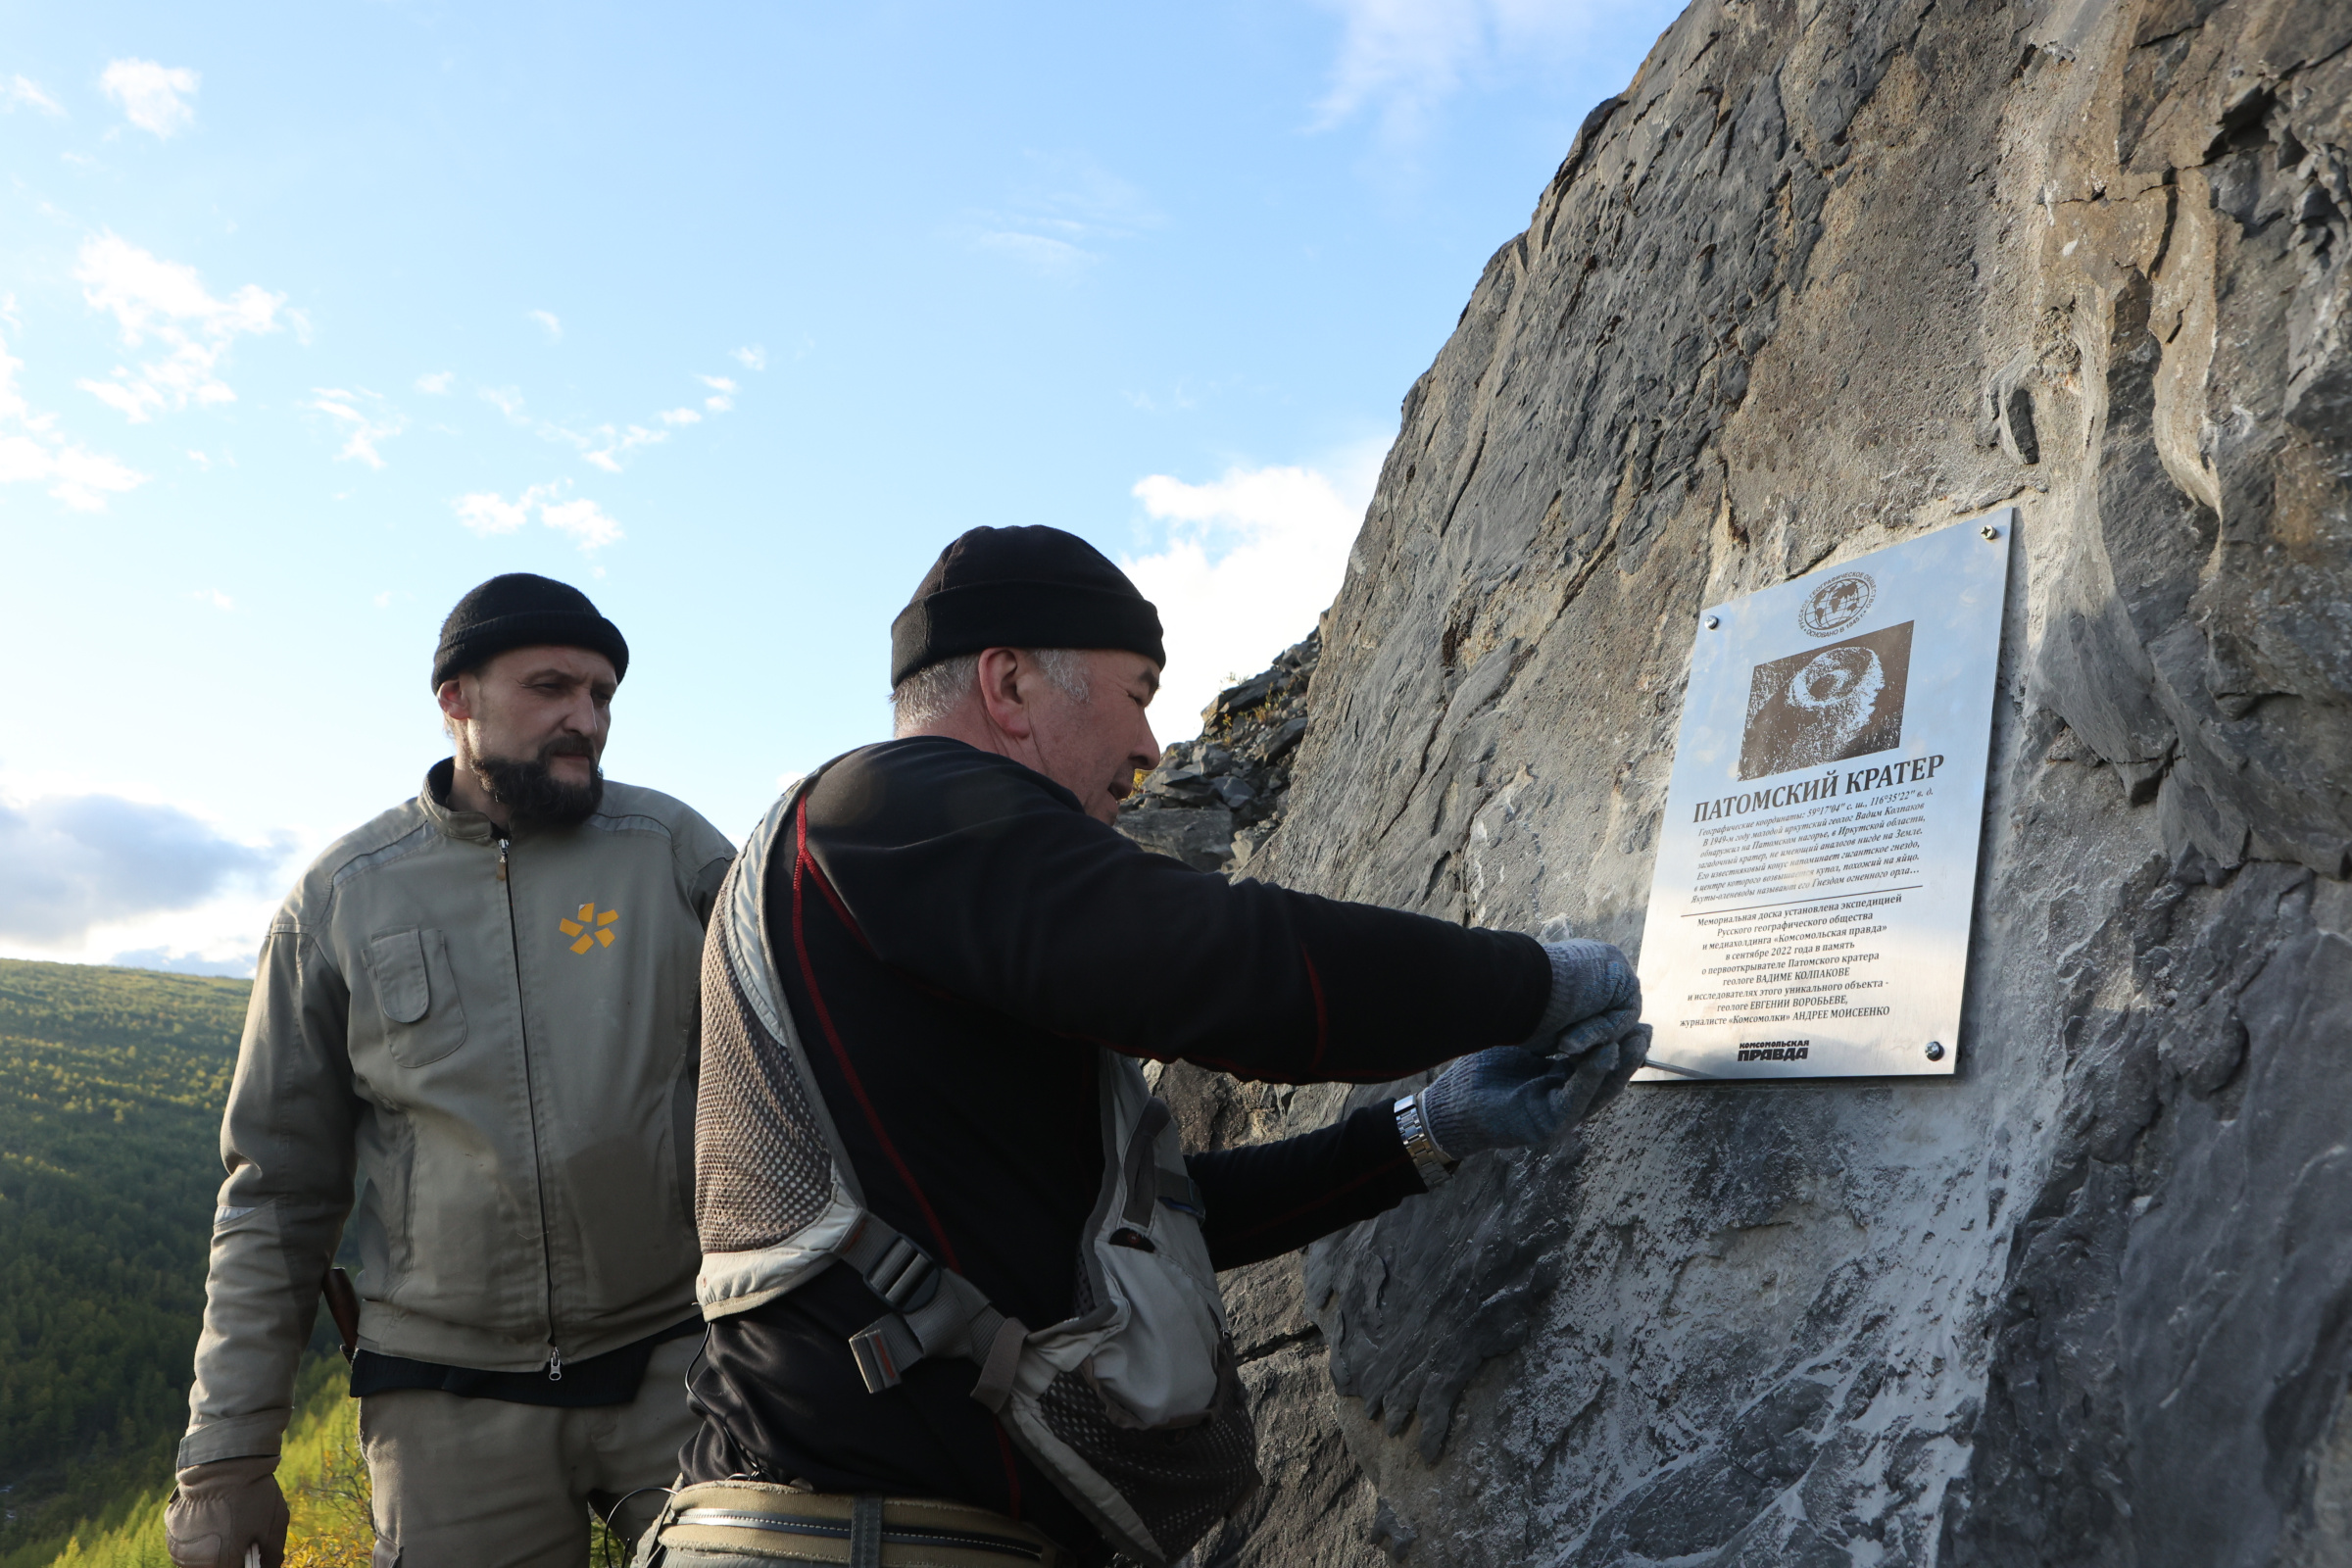 Установка памятной доски в честь исследователей Патомского кратера. Фото: Евгений Сазонов